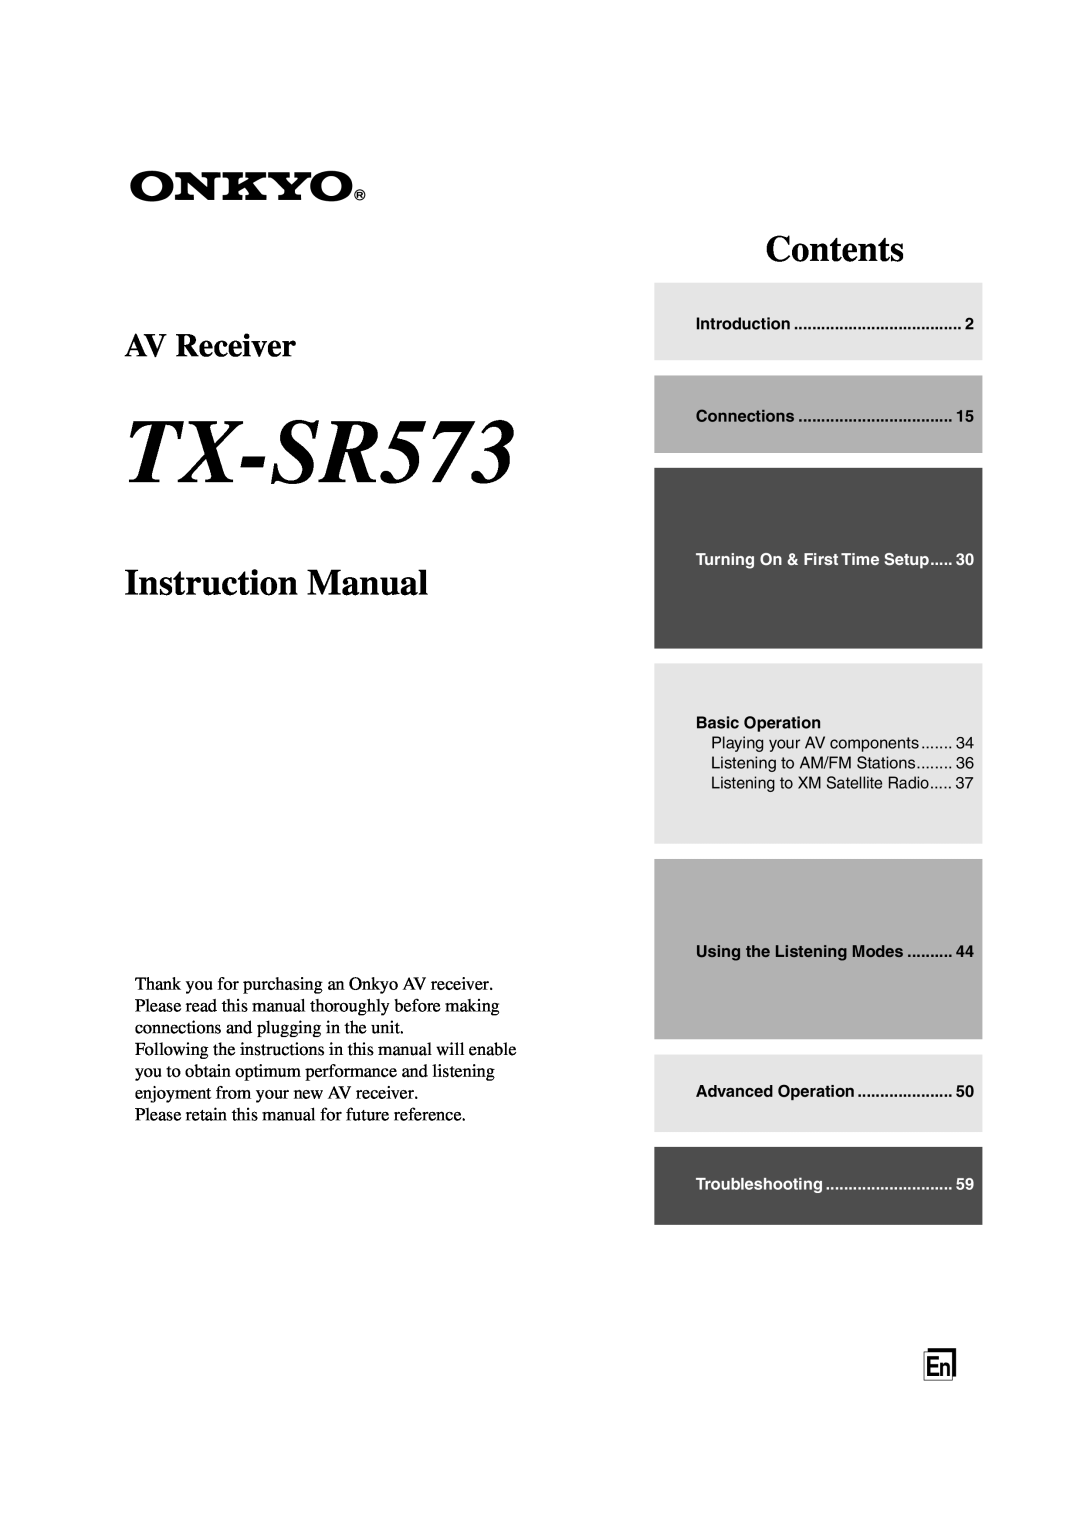 Onkyo TX-SR573 instruction manual Instruction Manual, Contents, AV Receiver 